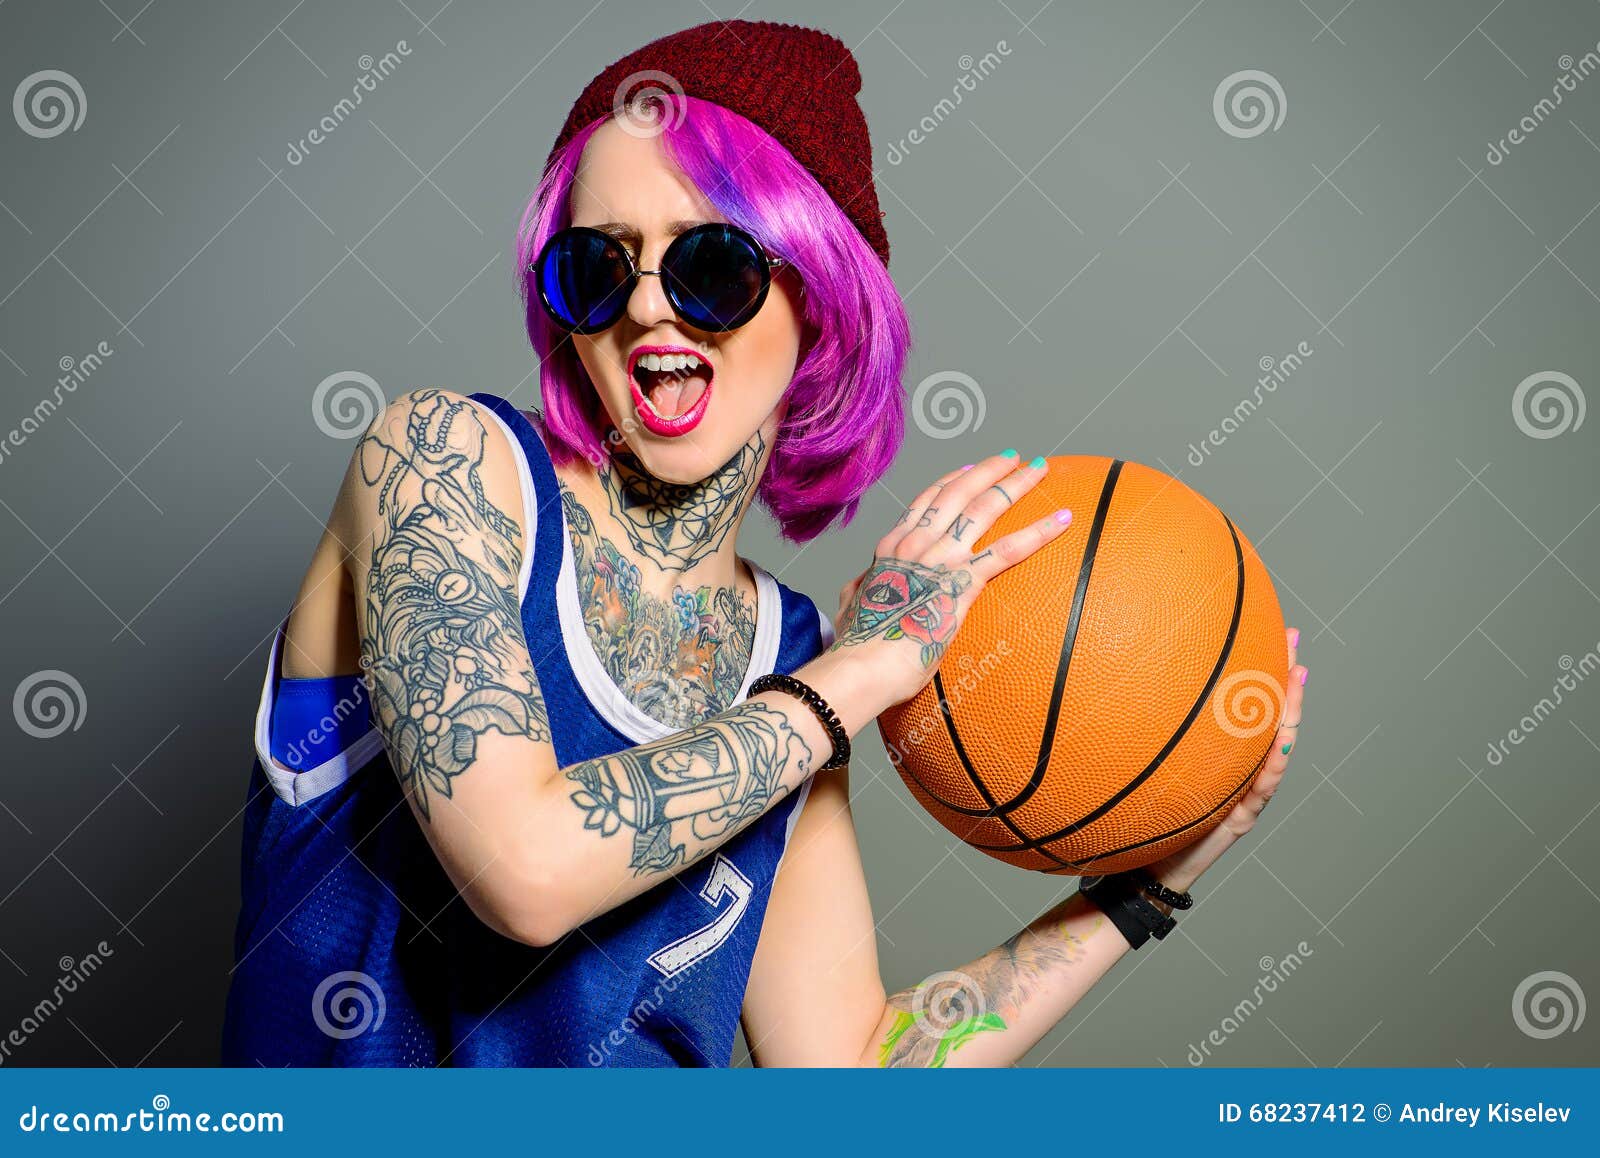 Basketball Tattoos | Basketball tattoos, Half sleeve tattoos forearm, Type  tattoo